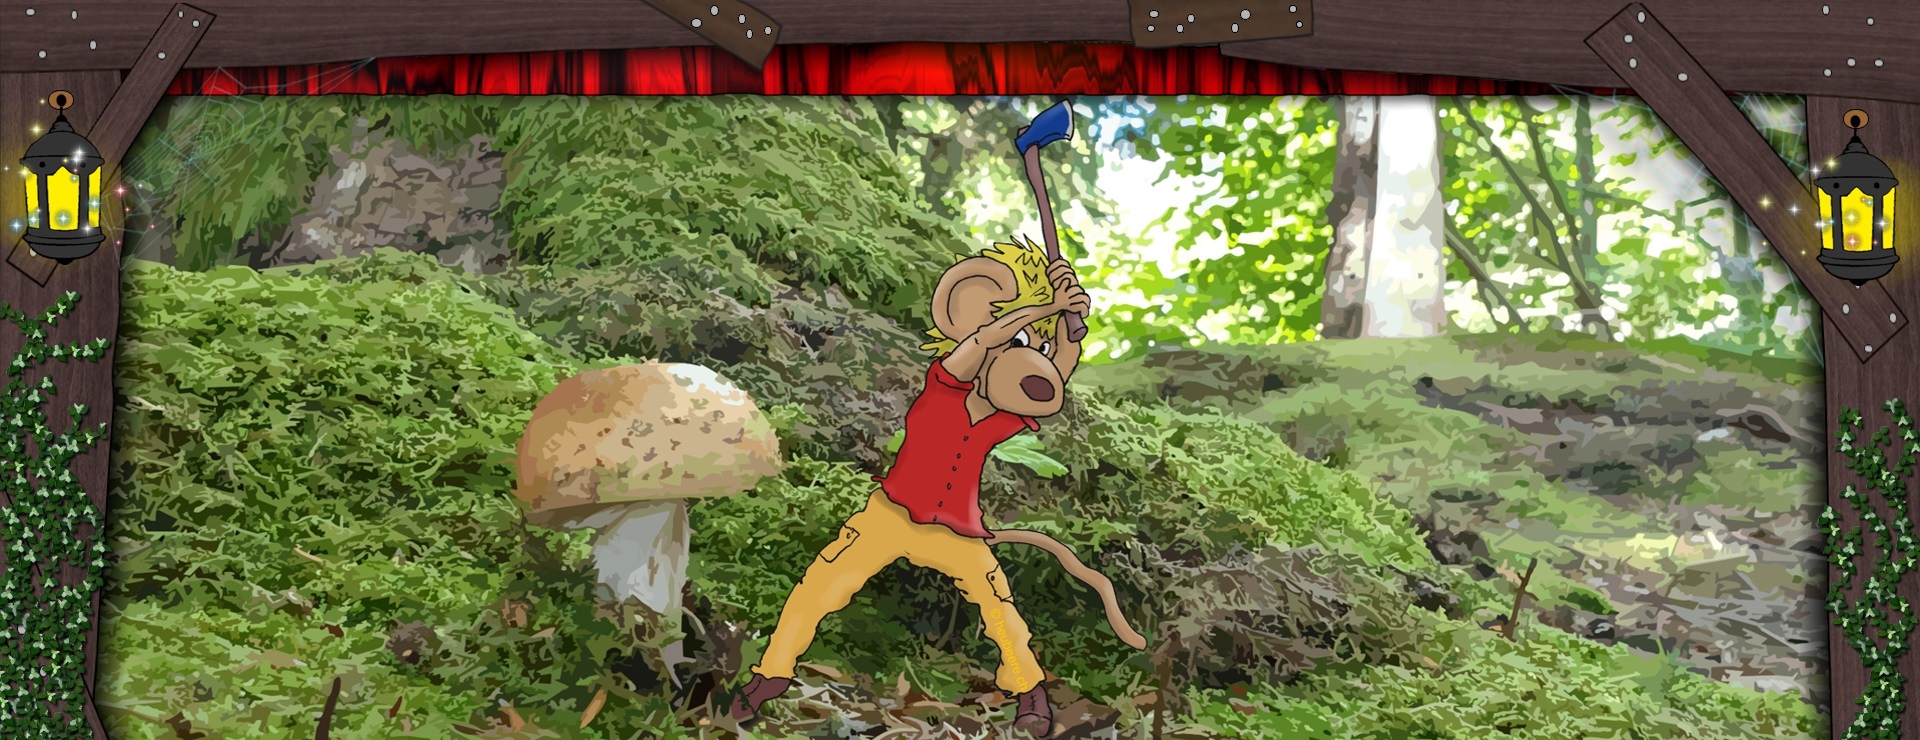 Bannerbild - Eine kleine Maus, die einen grossen Pilz mit der Axt fällt